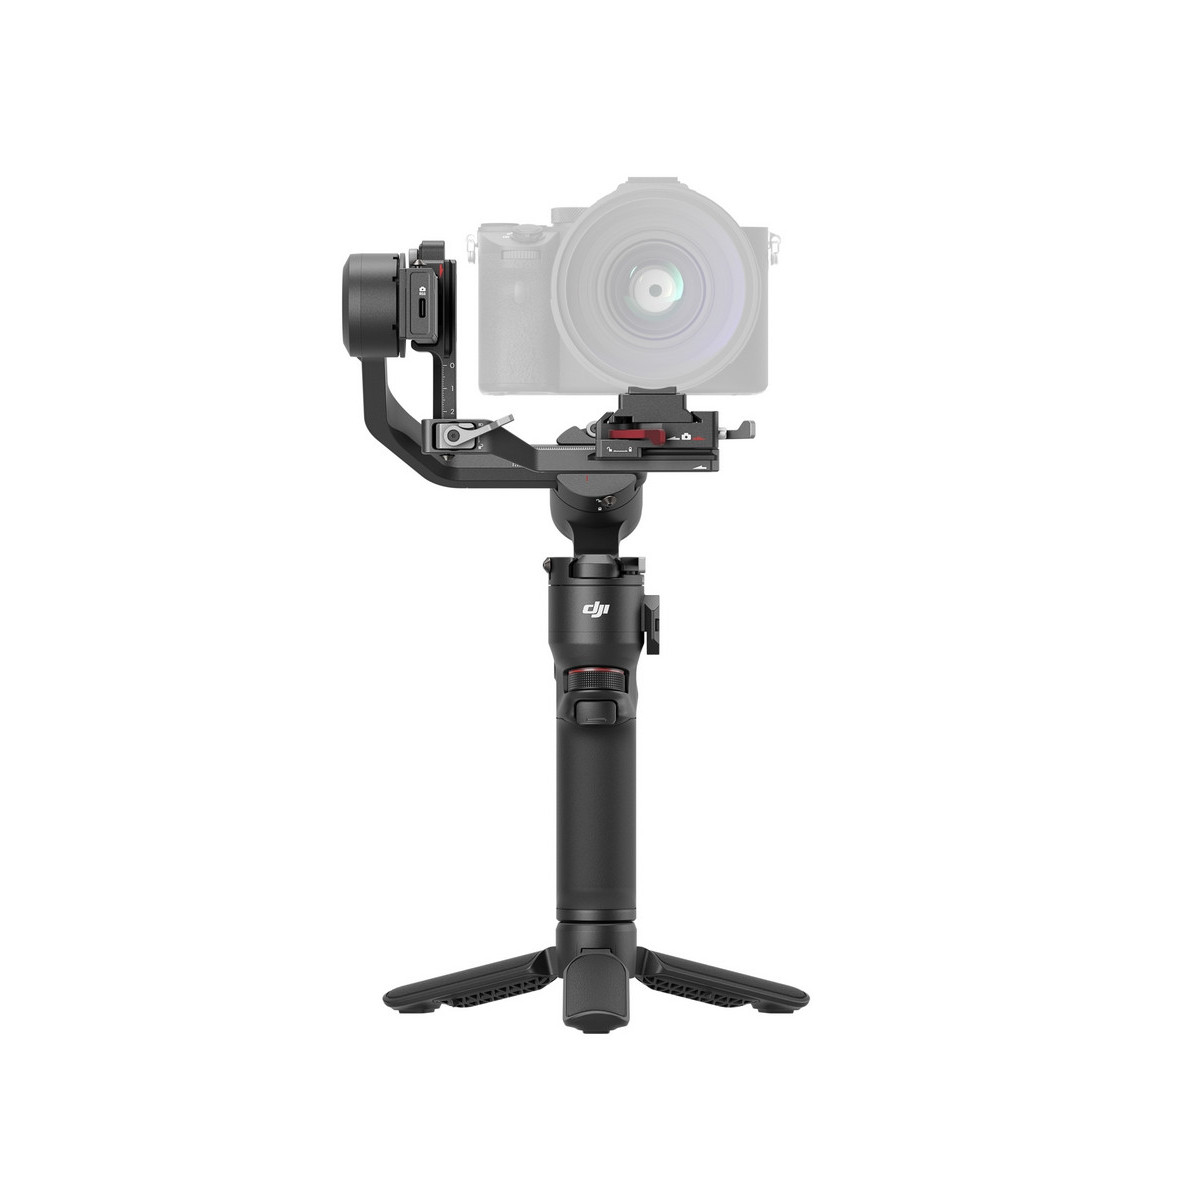 SmallRig : voici un accessoire vidéo fort utile pour filmer avec